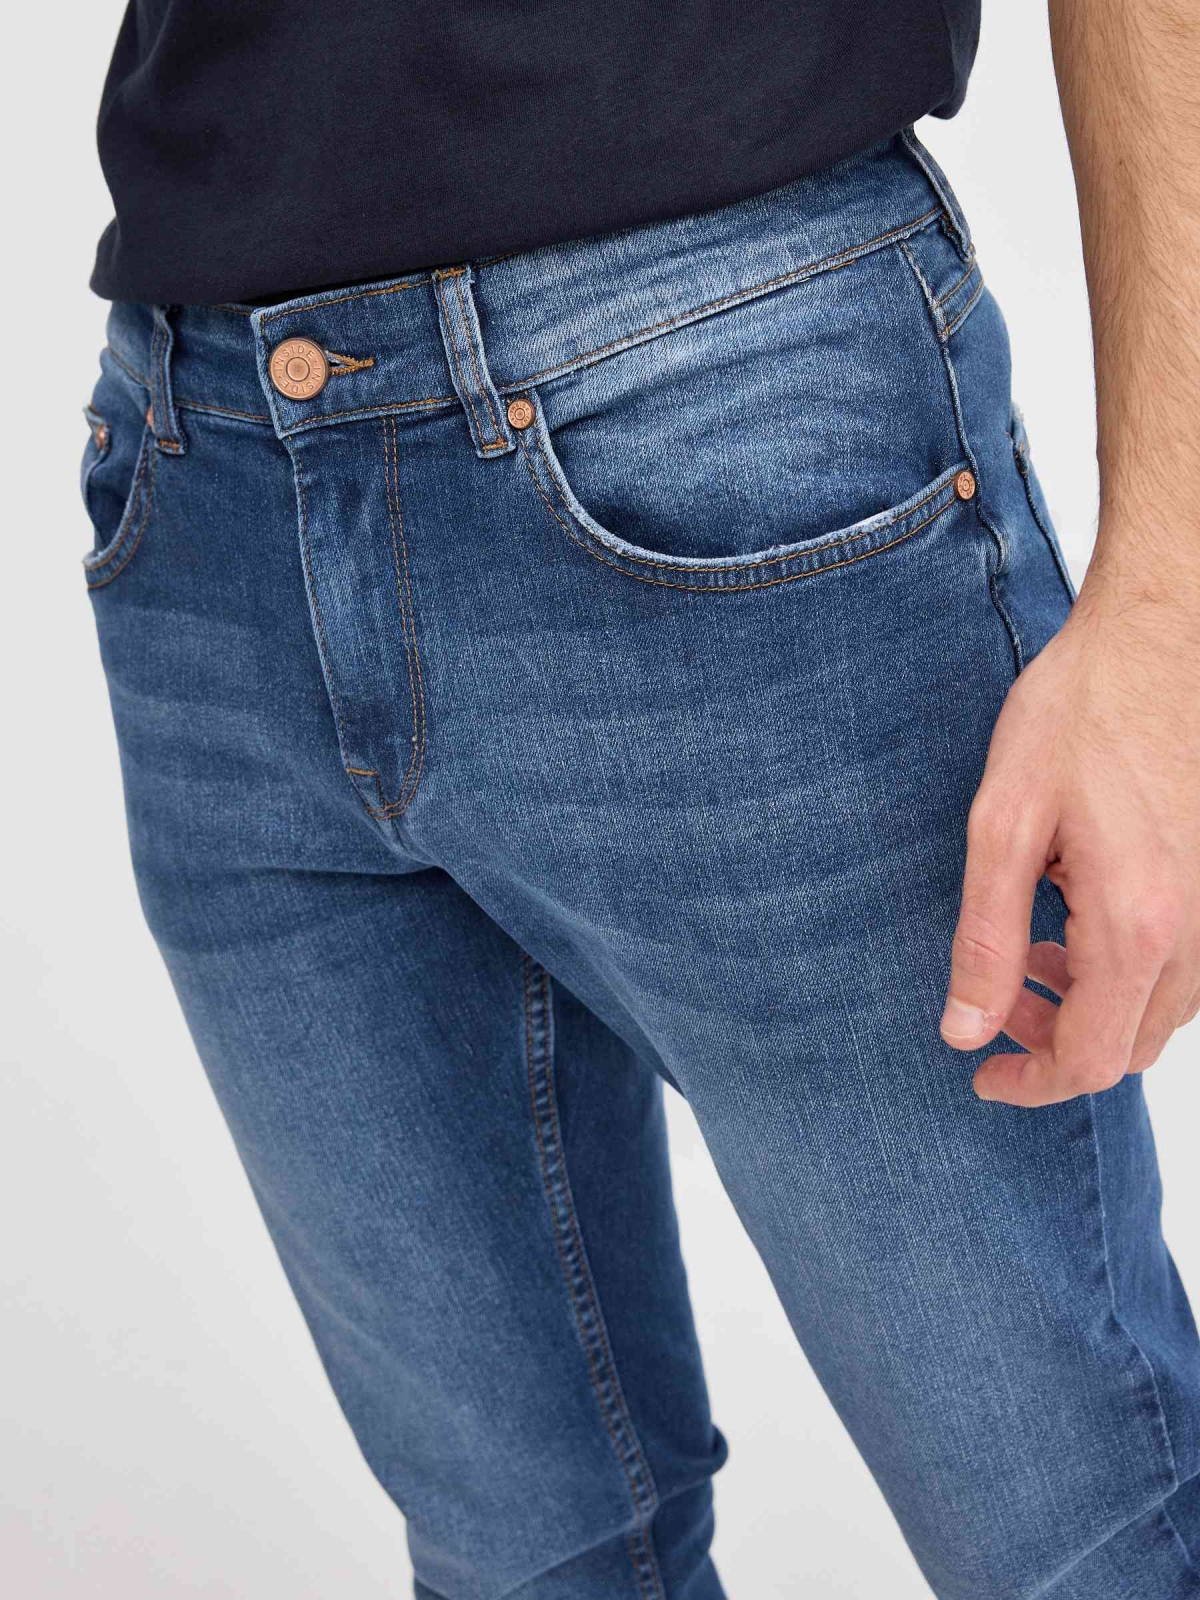 Jeans slim lavados muslo indigo azul vista detalle